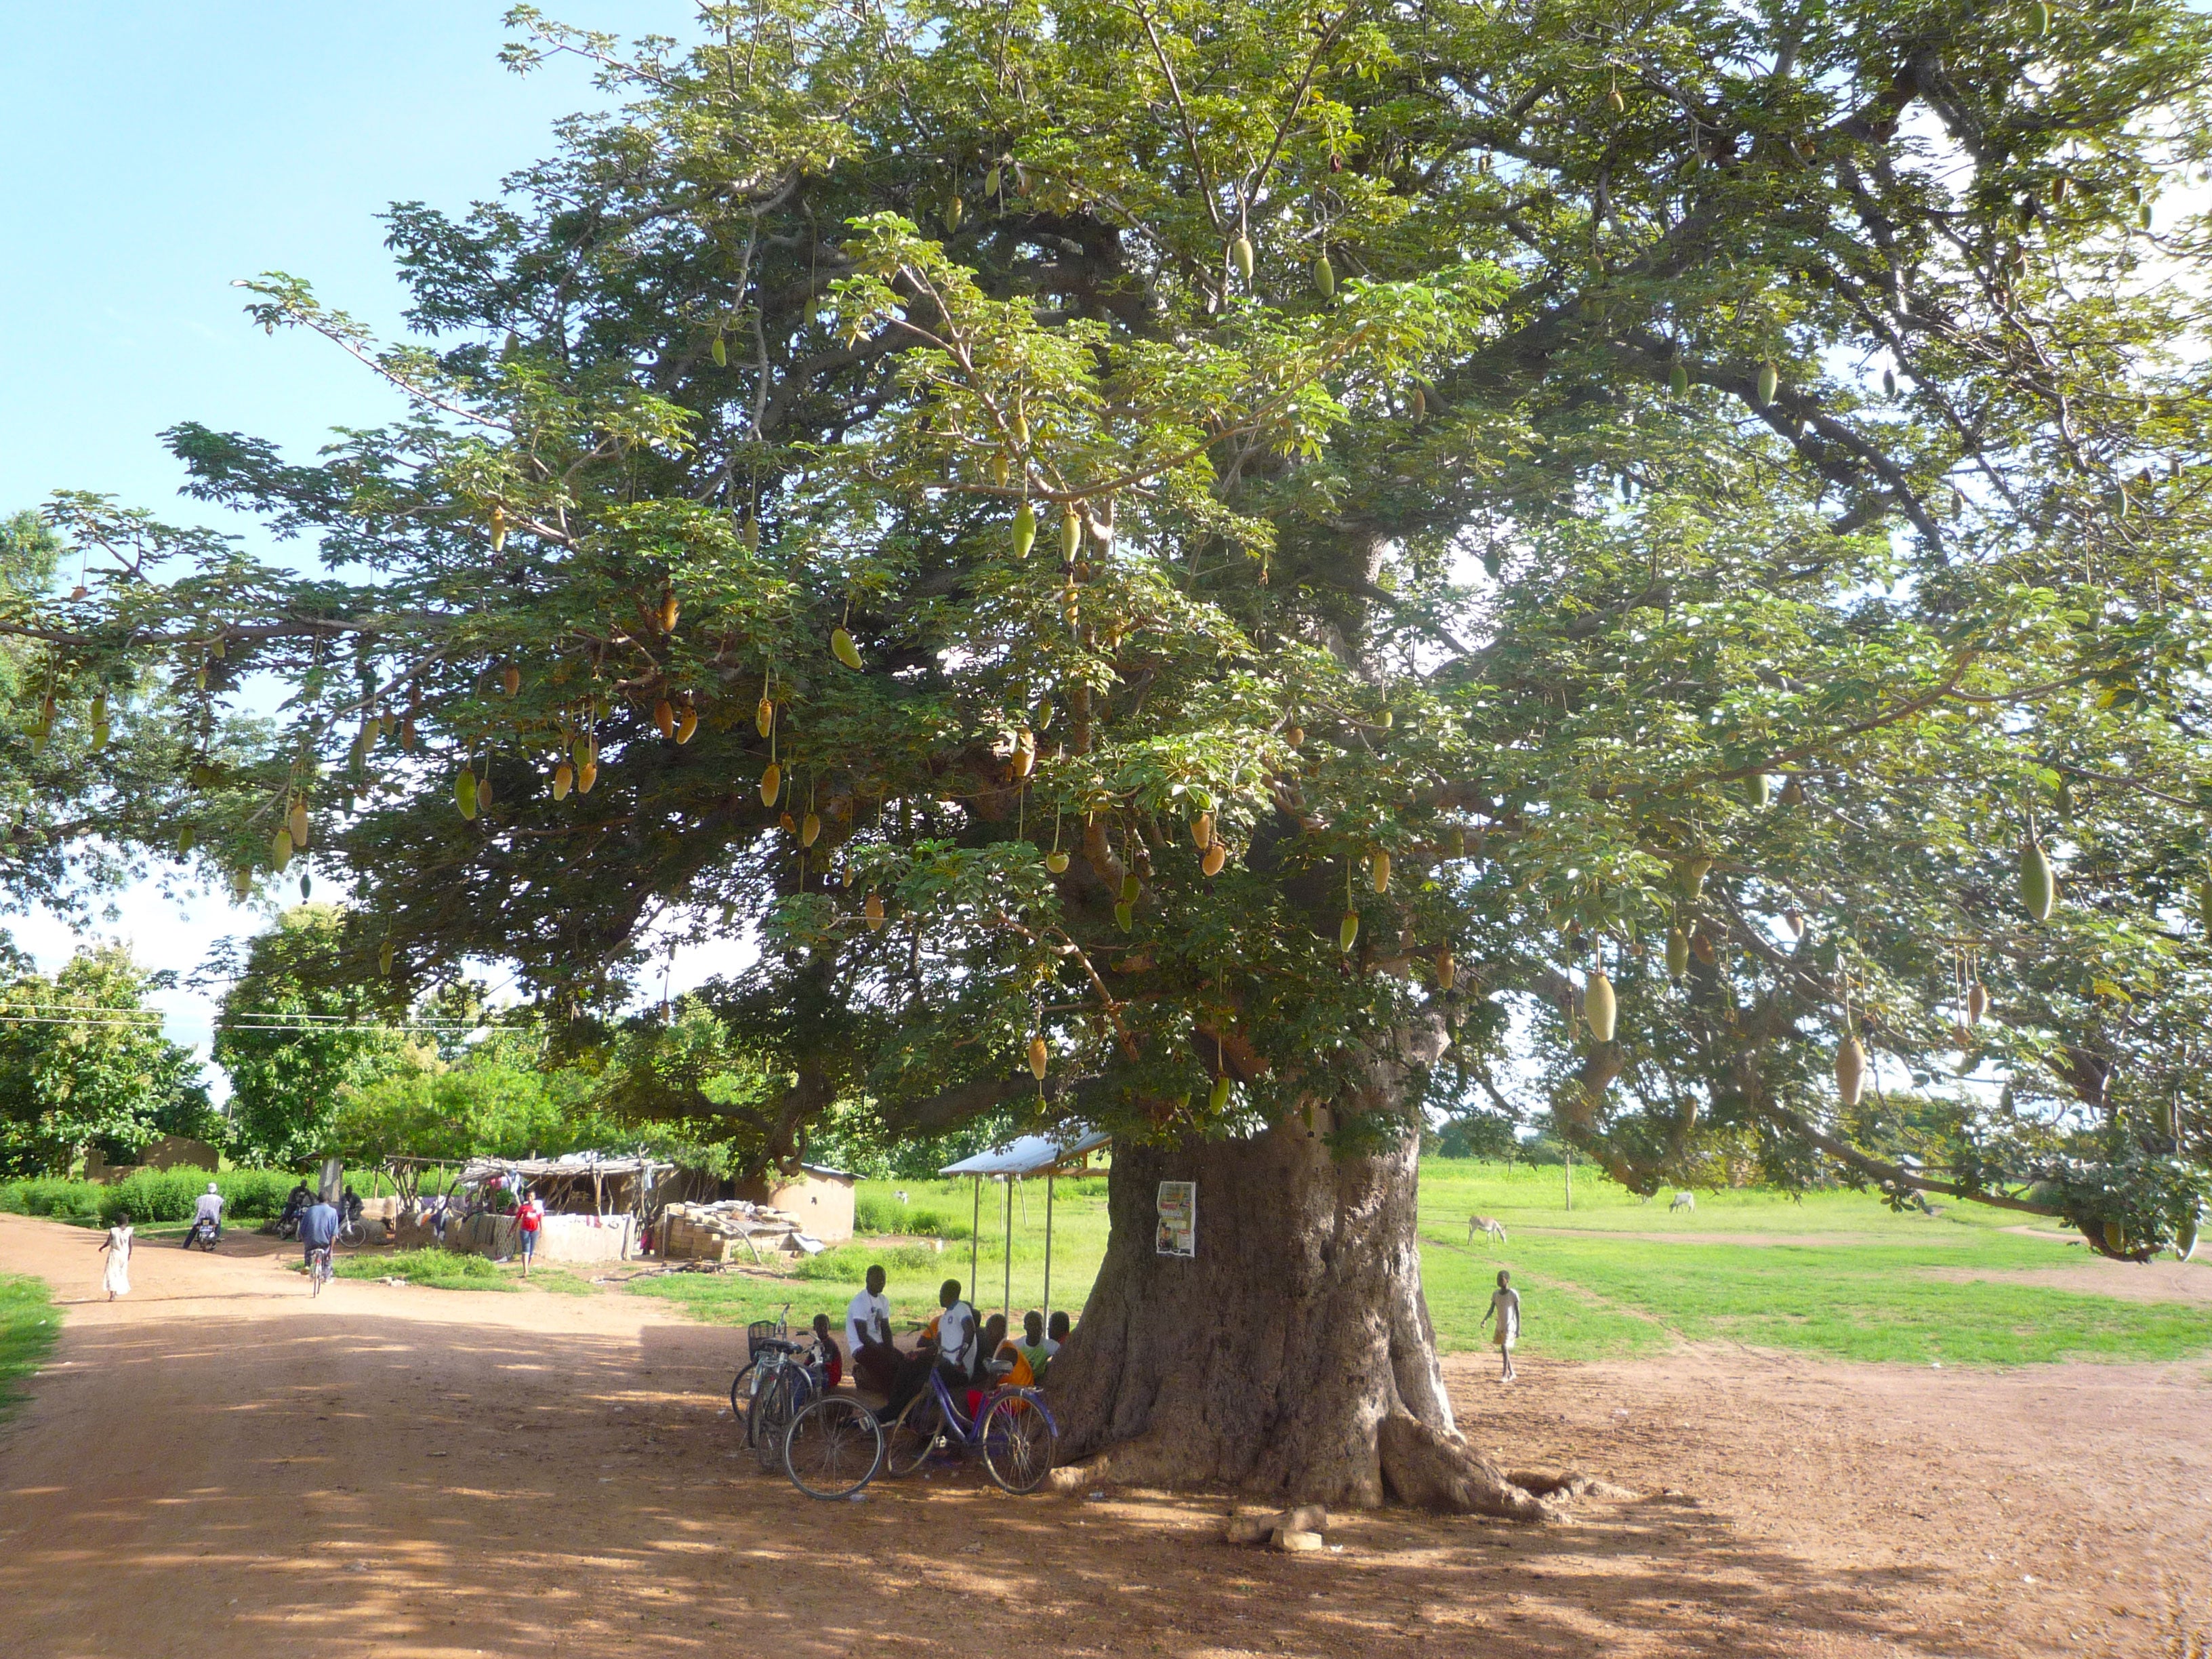 Baobab tree, near Paga Upper East Ghana where Aduna's supply chain is based